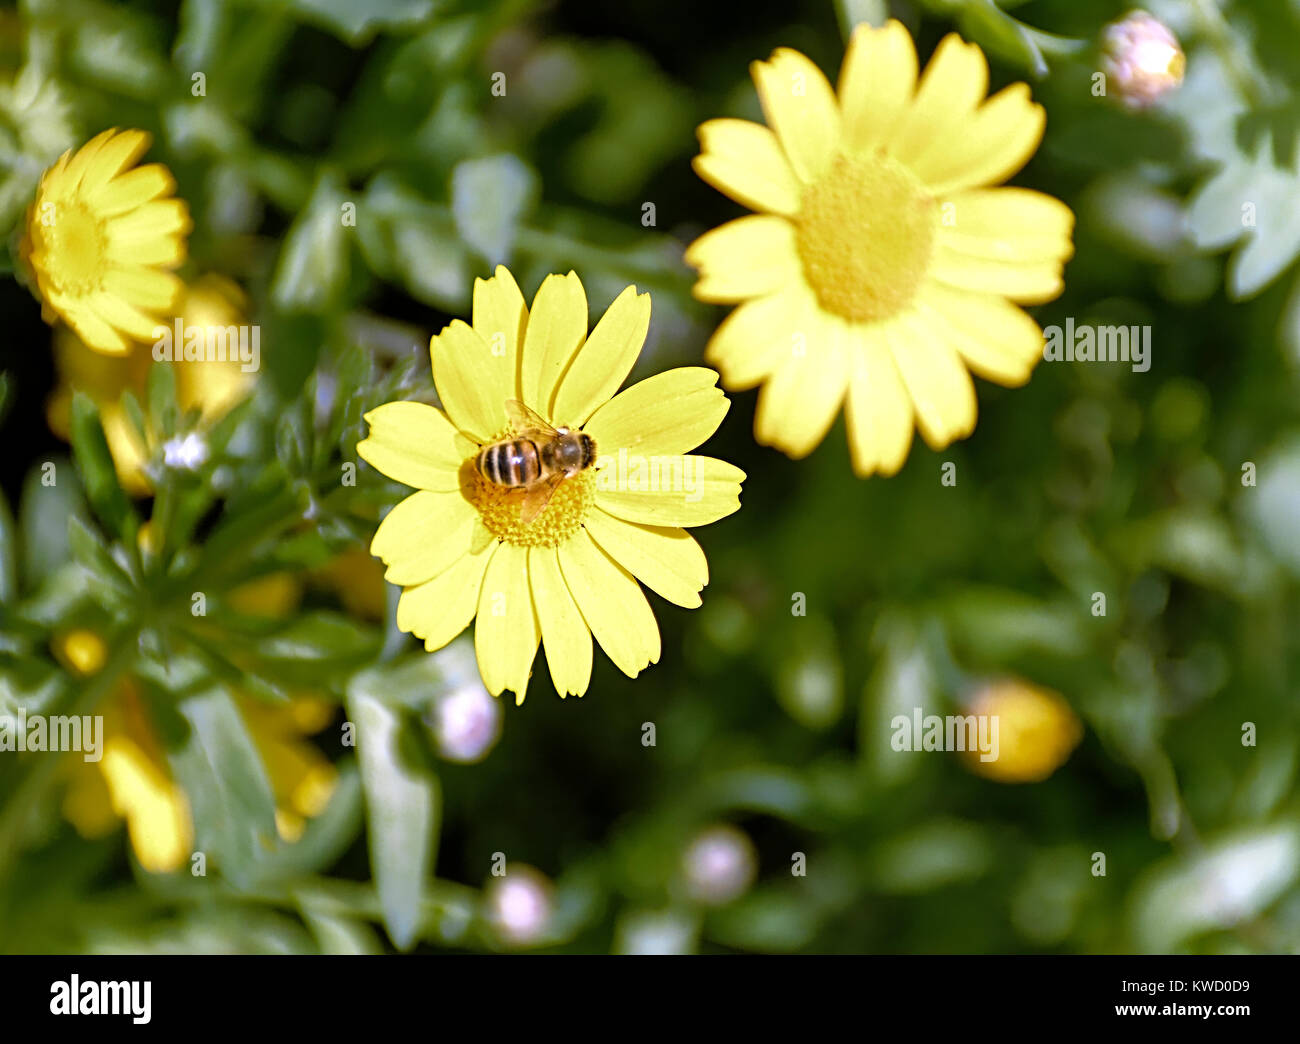 Gelbe Blume namens Calendula arvensis mit Biene auf blütenstempel Stockfoto